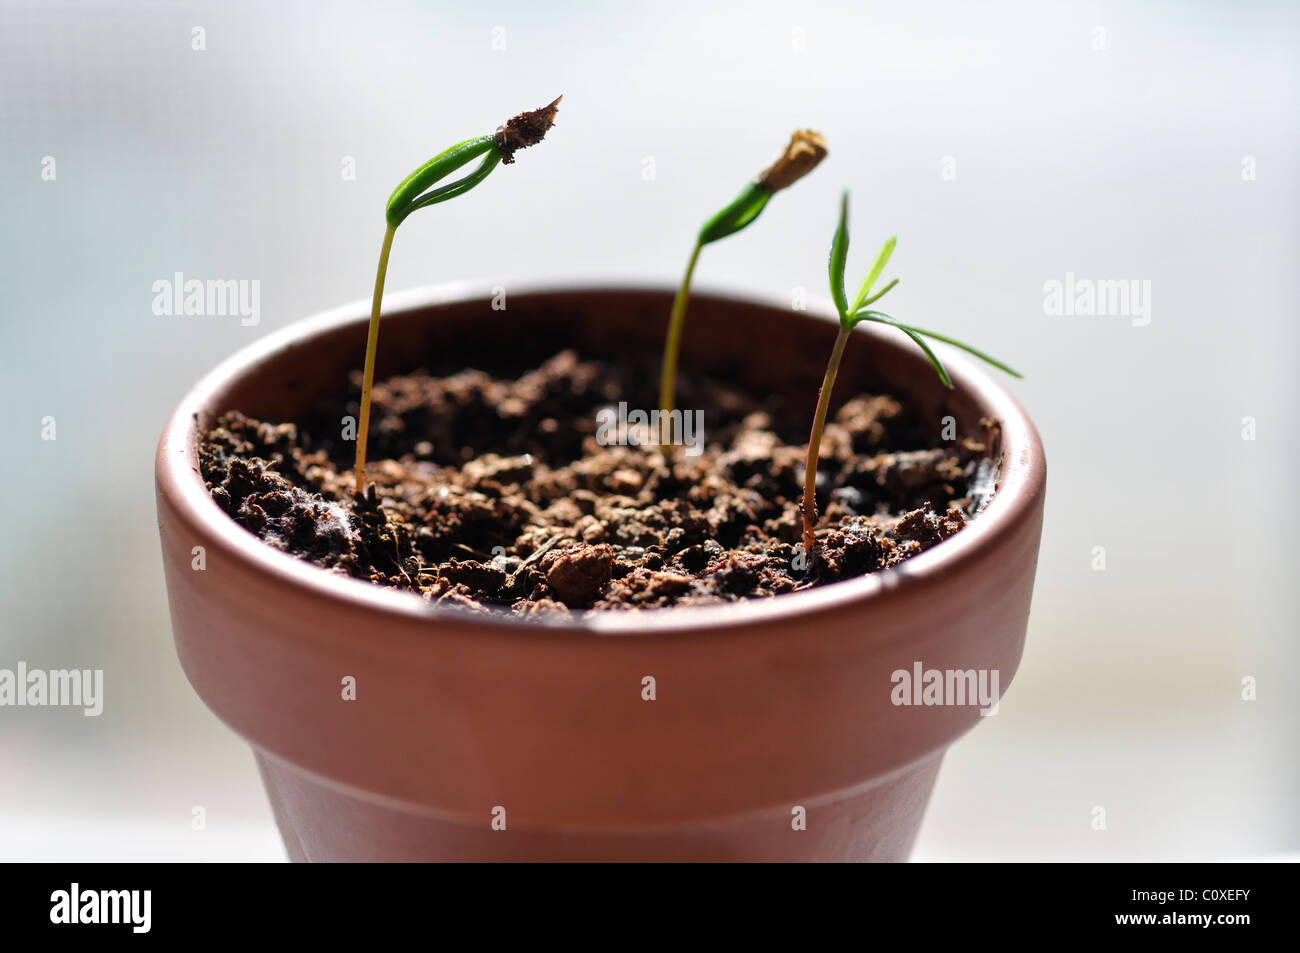 Balsam fir sprout Stock Photo